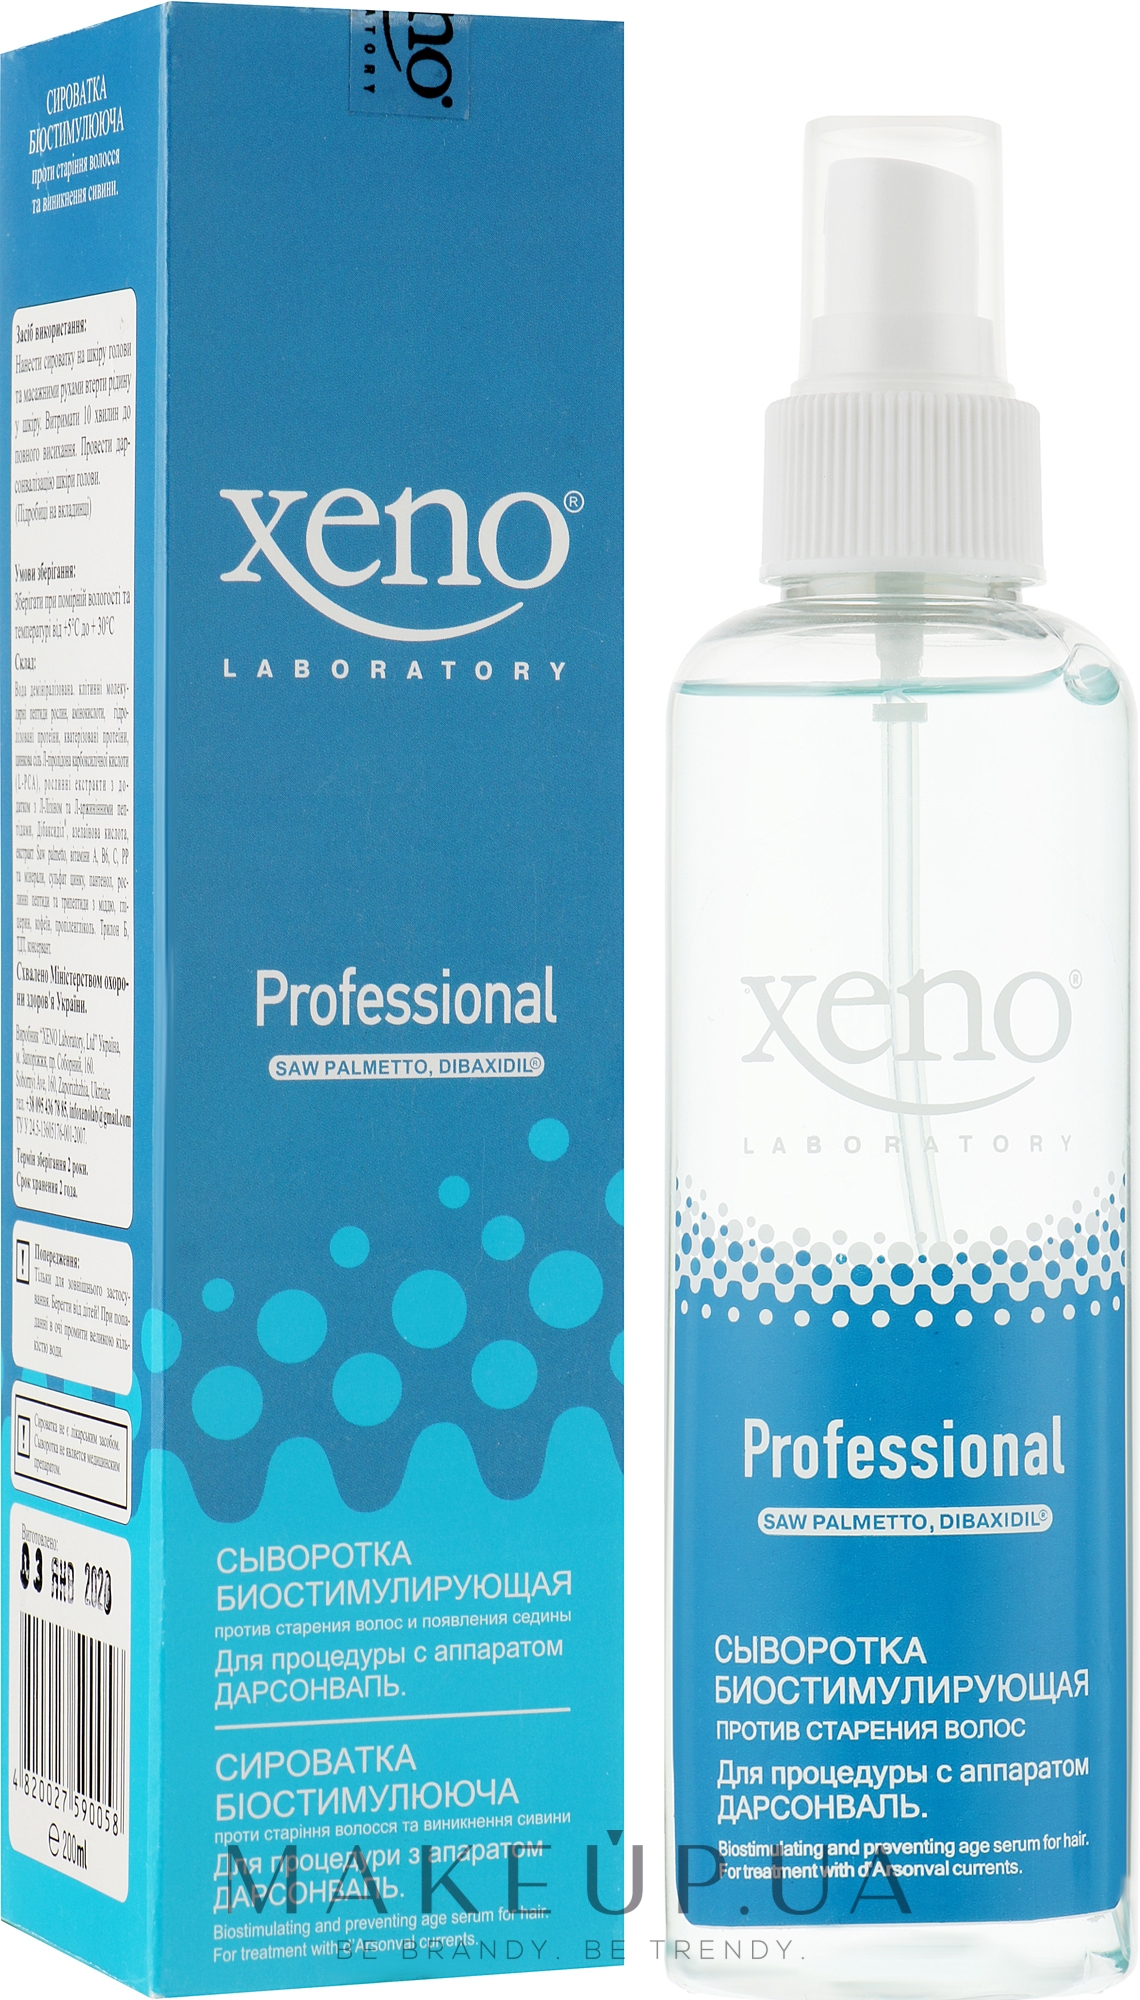 Сыворотка от старения волос и появления седины для применения с аппаратом Дарсонваль и ионофорезом - Xeno Laboratory Bio-Serum  — фото 200ml